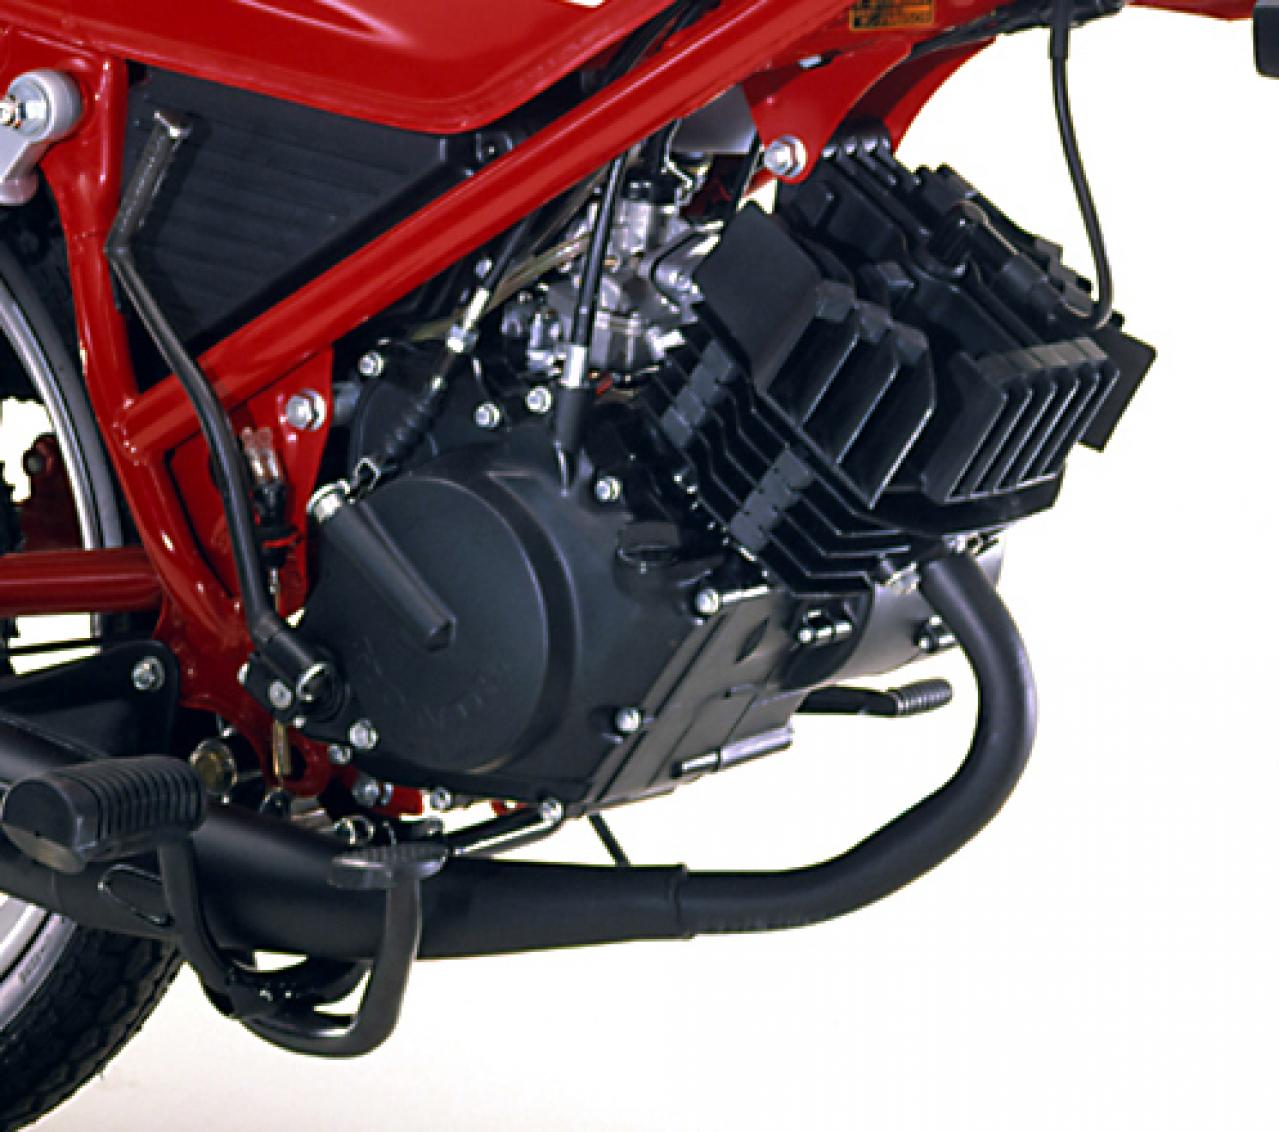 空冷 2スト 7馬力 ホンダの2ストスポーツ初号機 Mb50 を振り返る Motor Fan Bikes モータファンバイクス